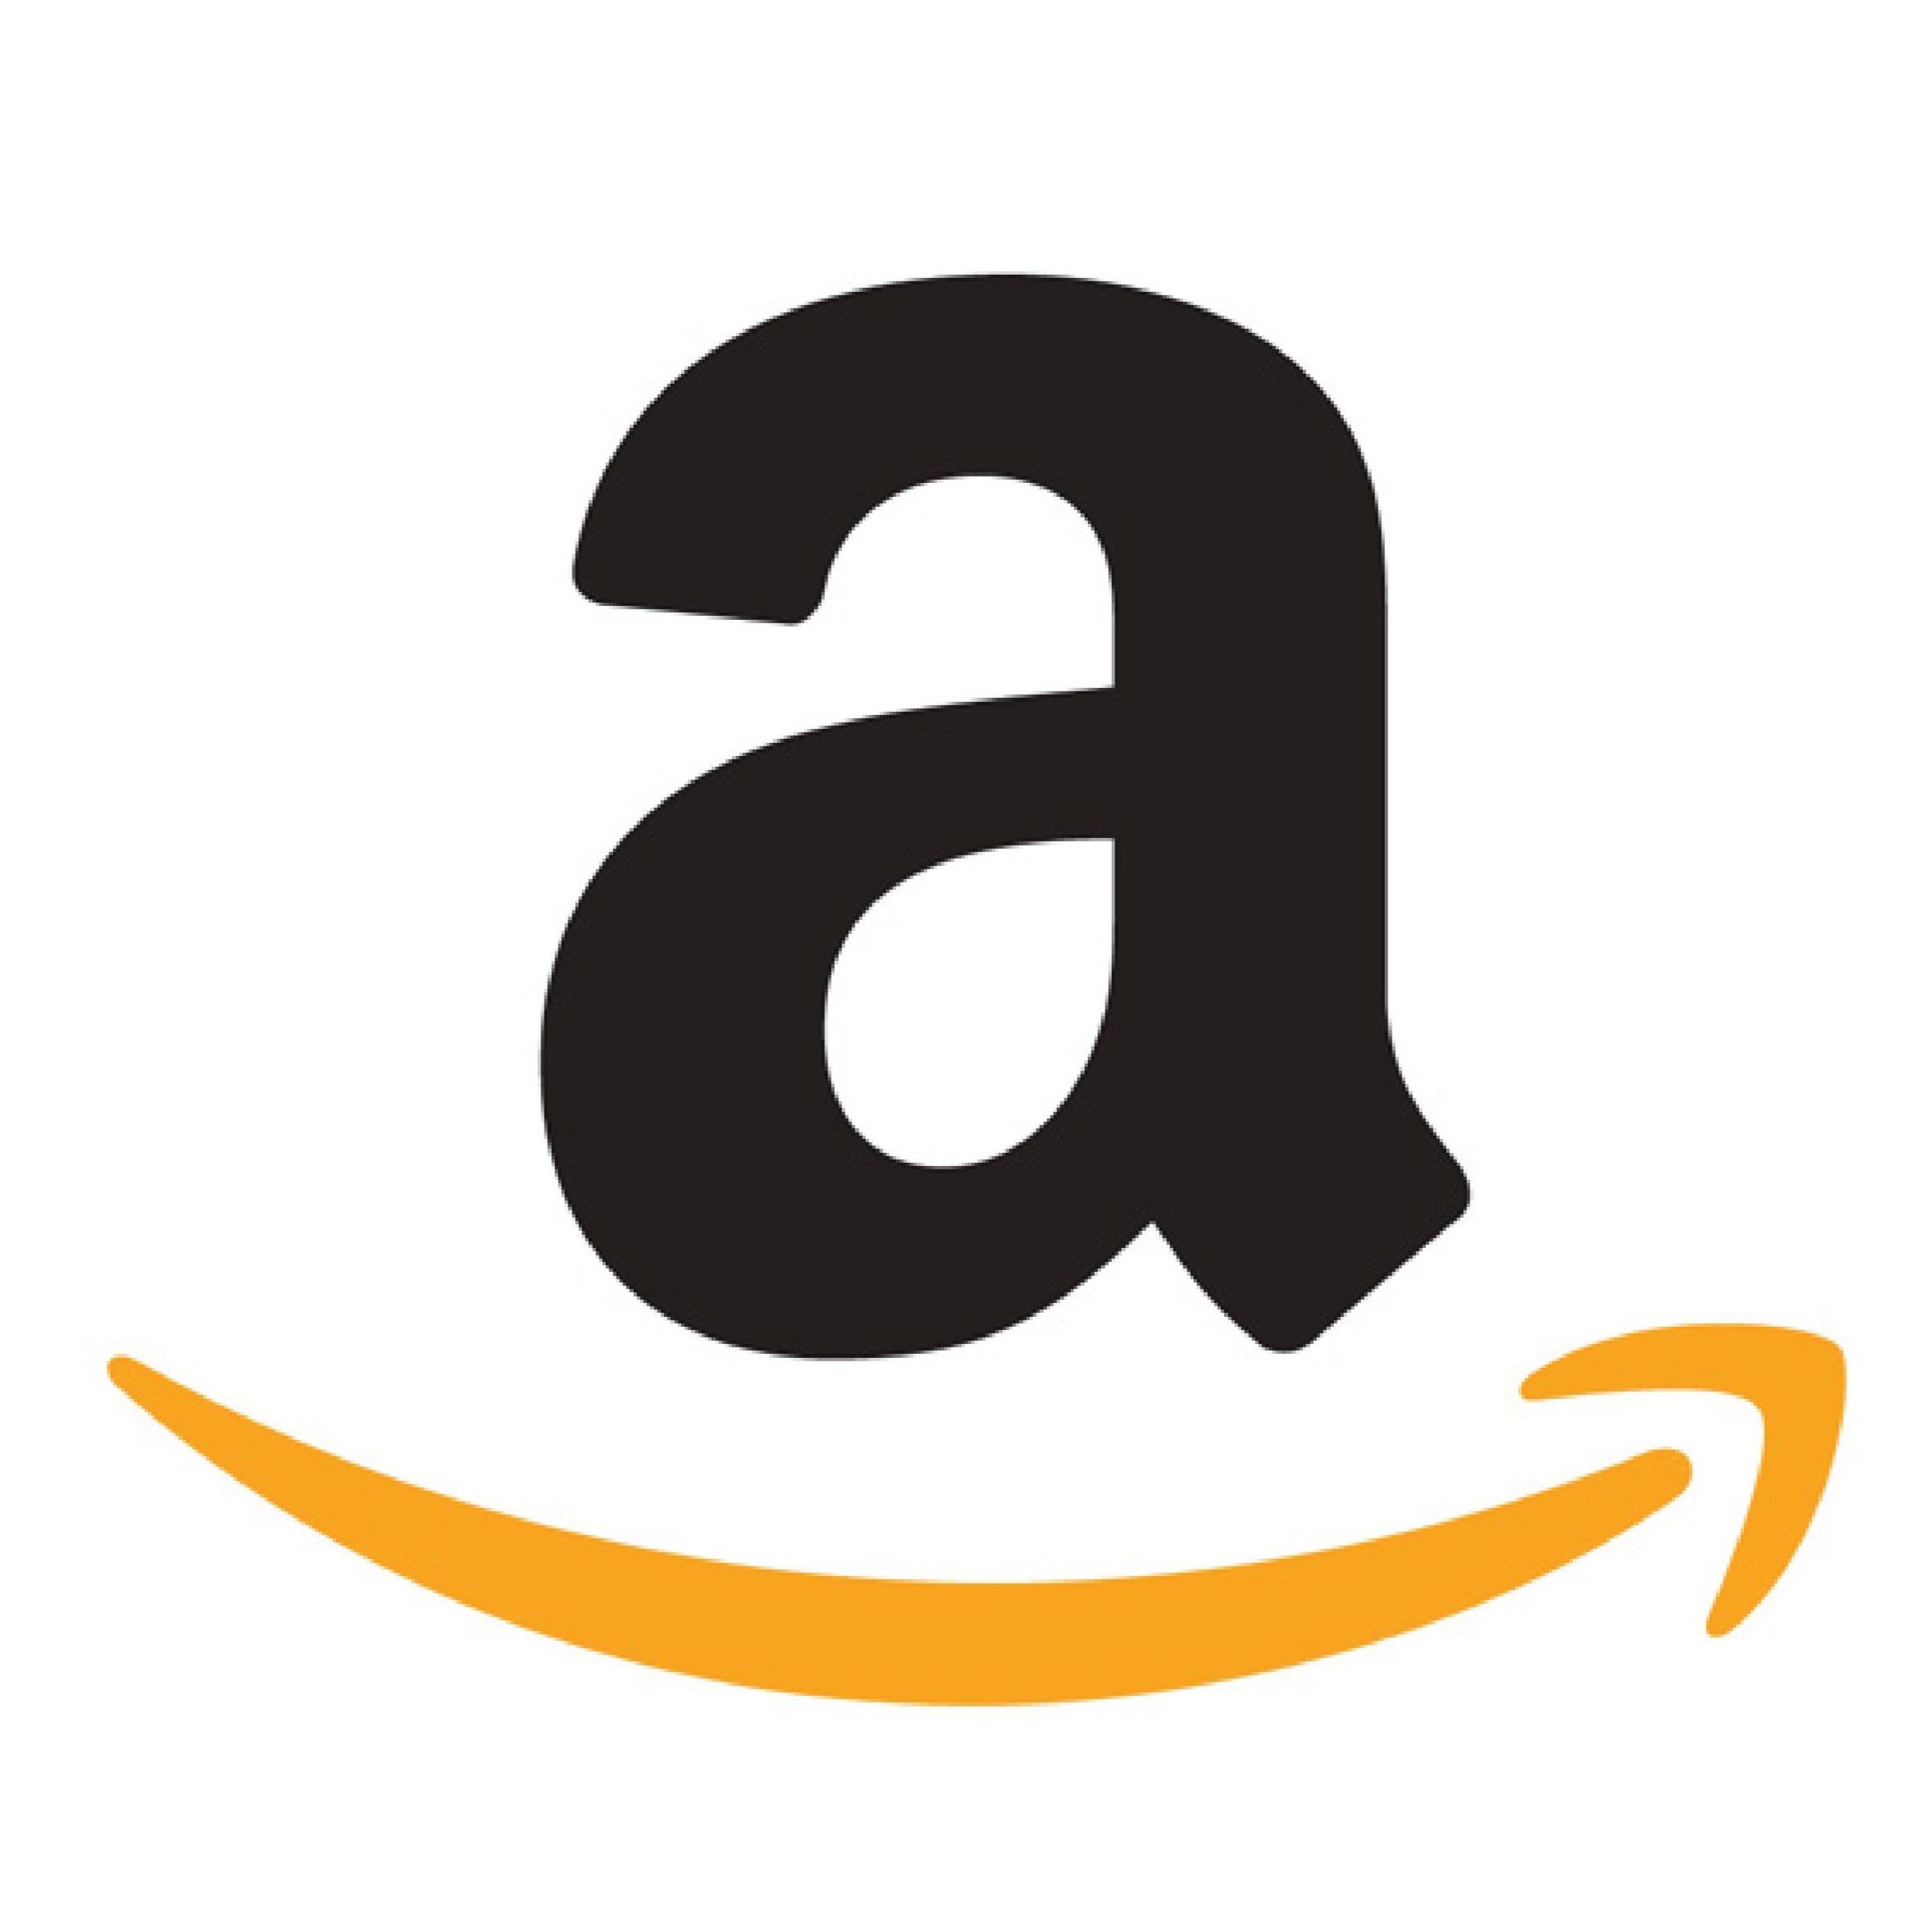 Amazon India Extractor